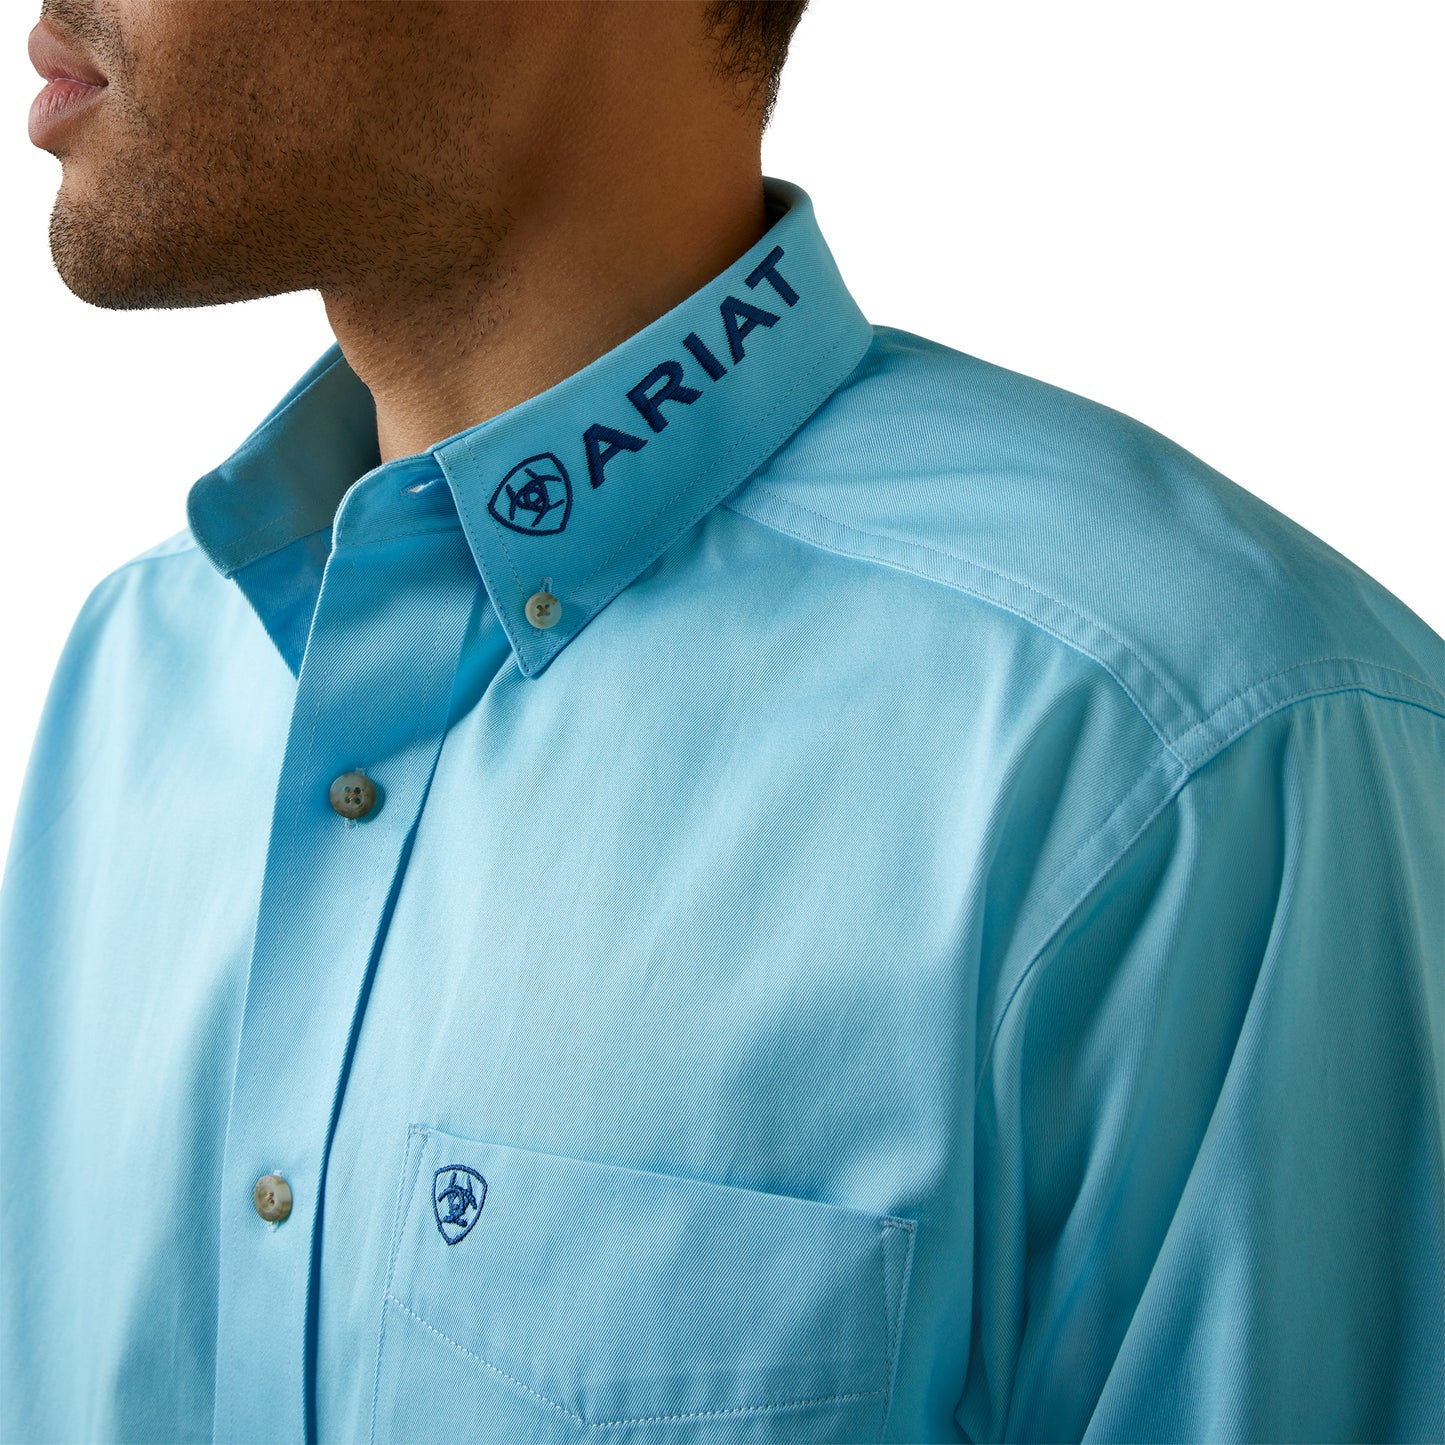 Ariat Men's Team Logo Twill Cenote Aqua Blue Button Down Shirt 10044940